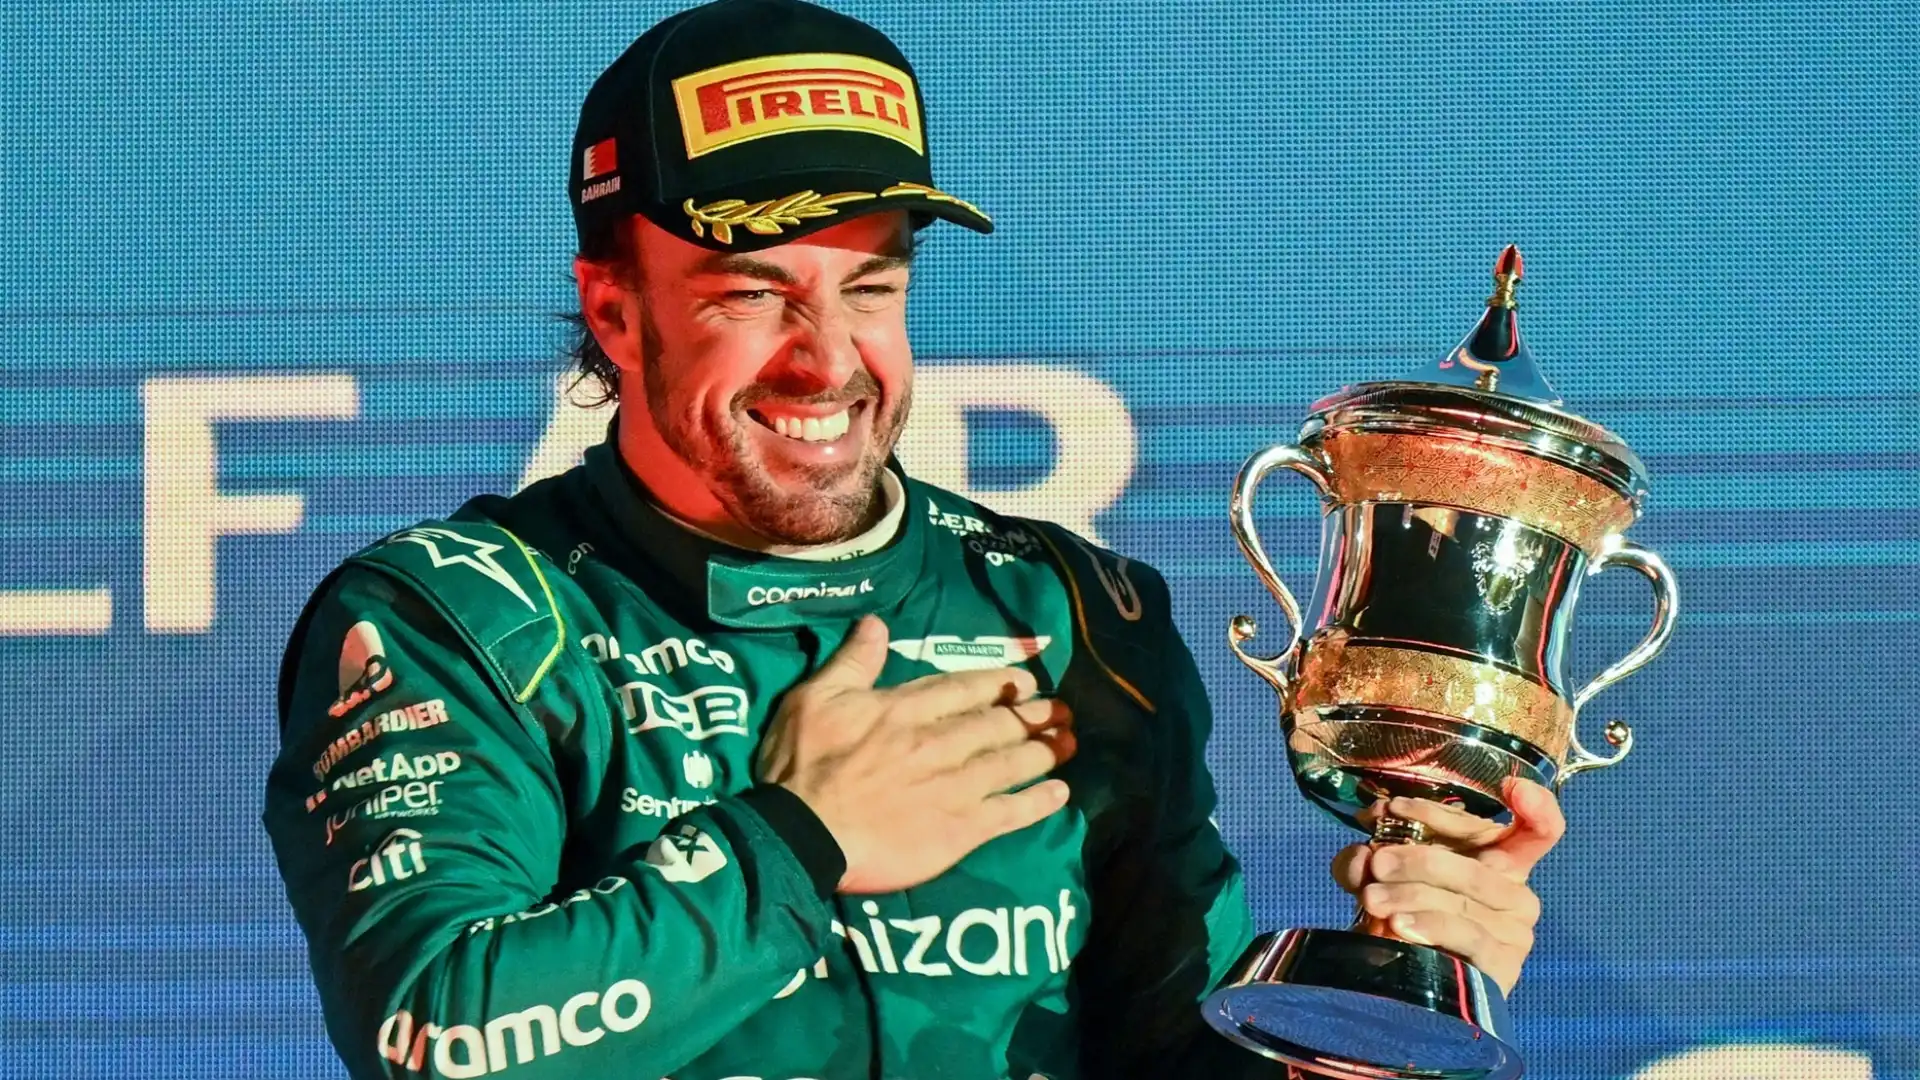 Alonso potrebbe diventare il pilota svincolato più ambito della F1, e la Red Bull potrebbe pensarci, visti i buoni rapporti con lo spagnolo